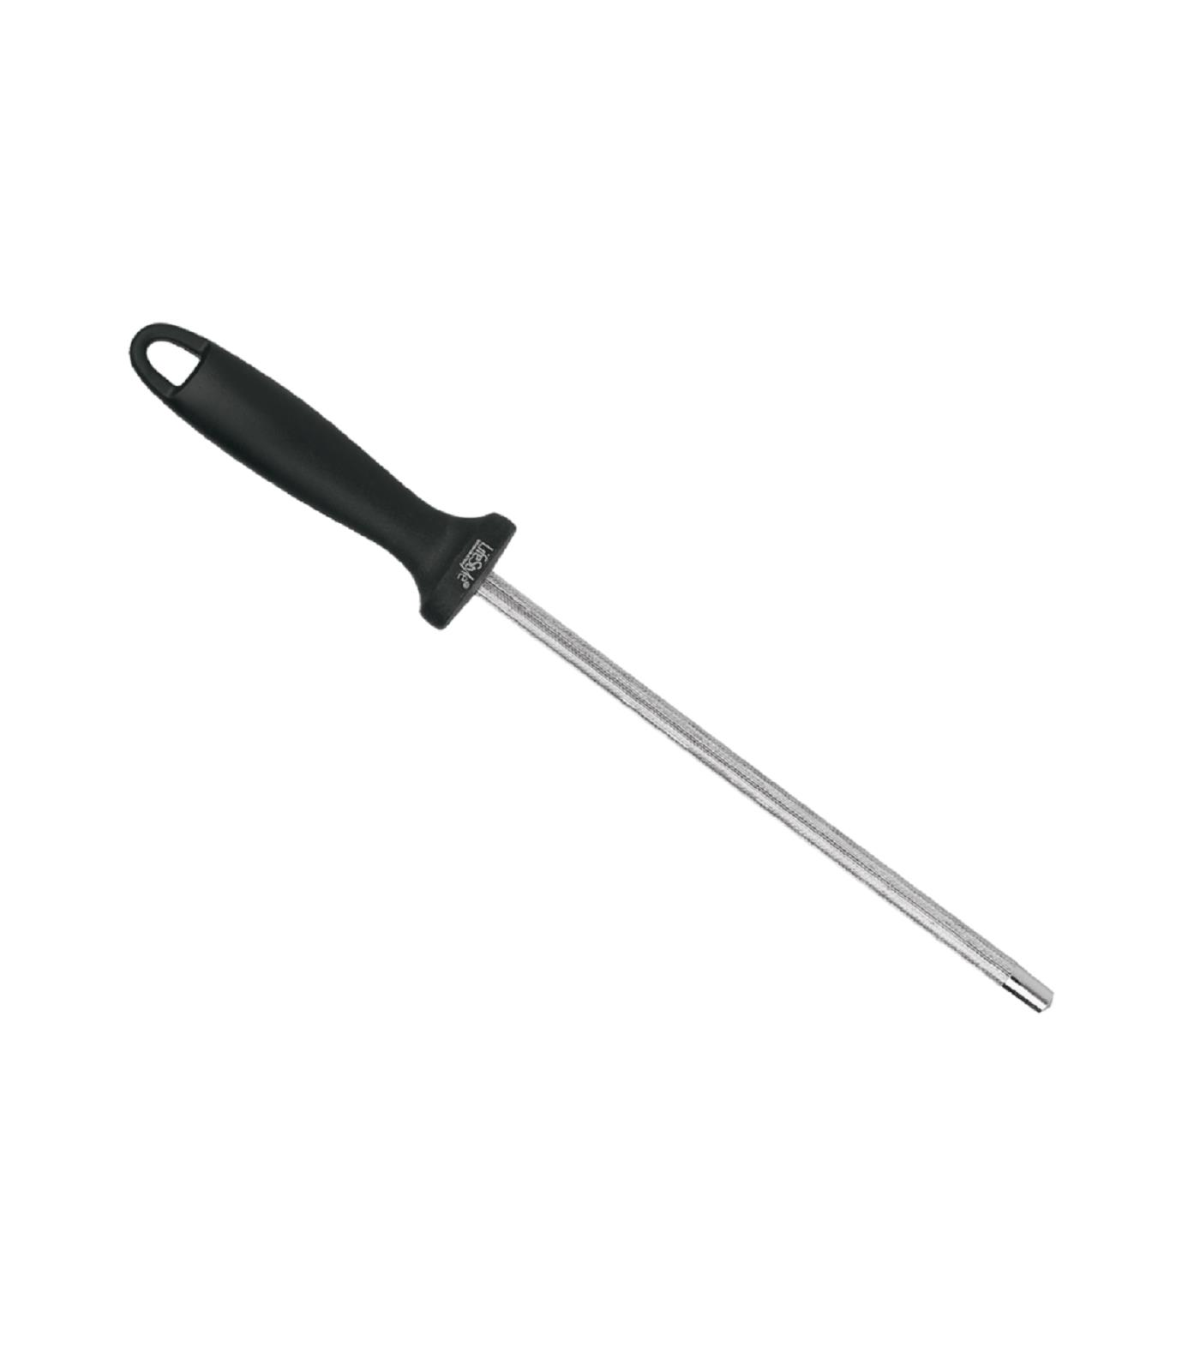  Afilador de cuchillos - Afilador manual profesional de